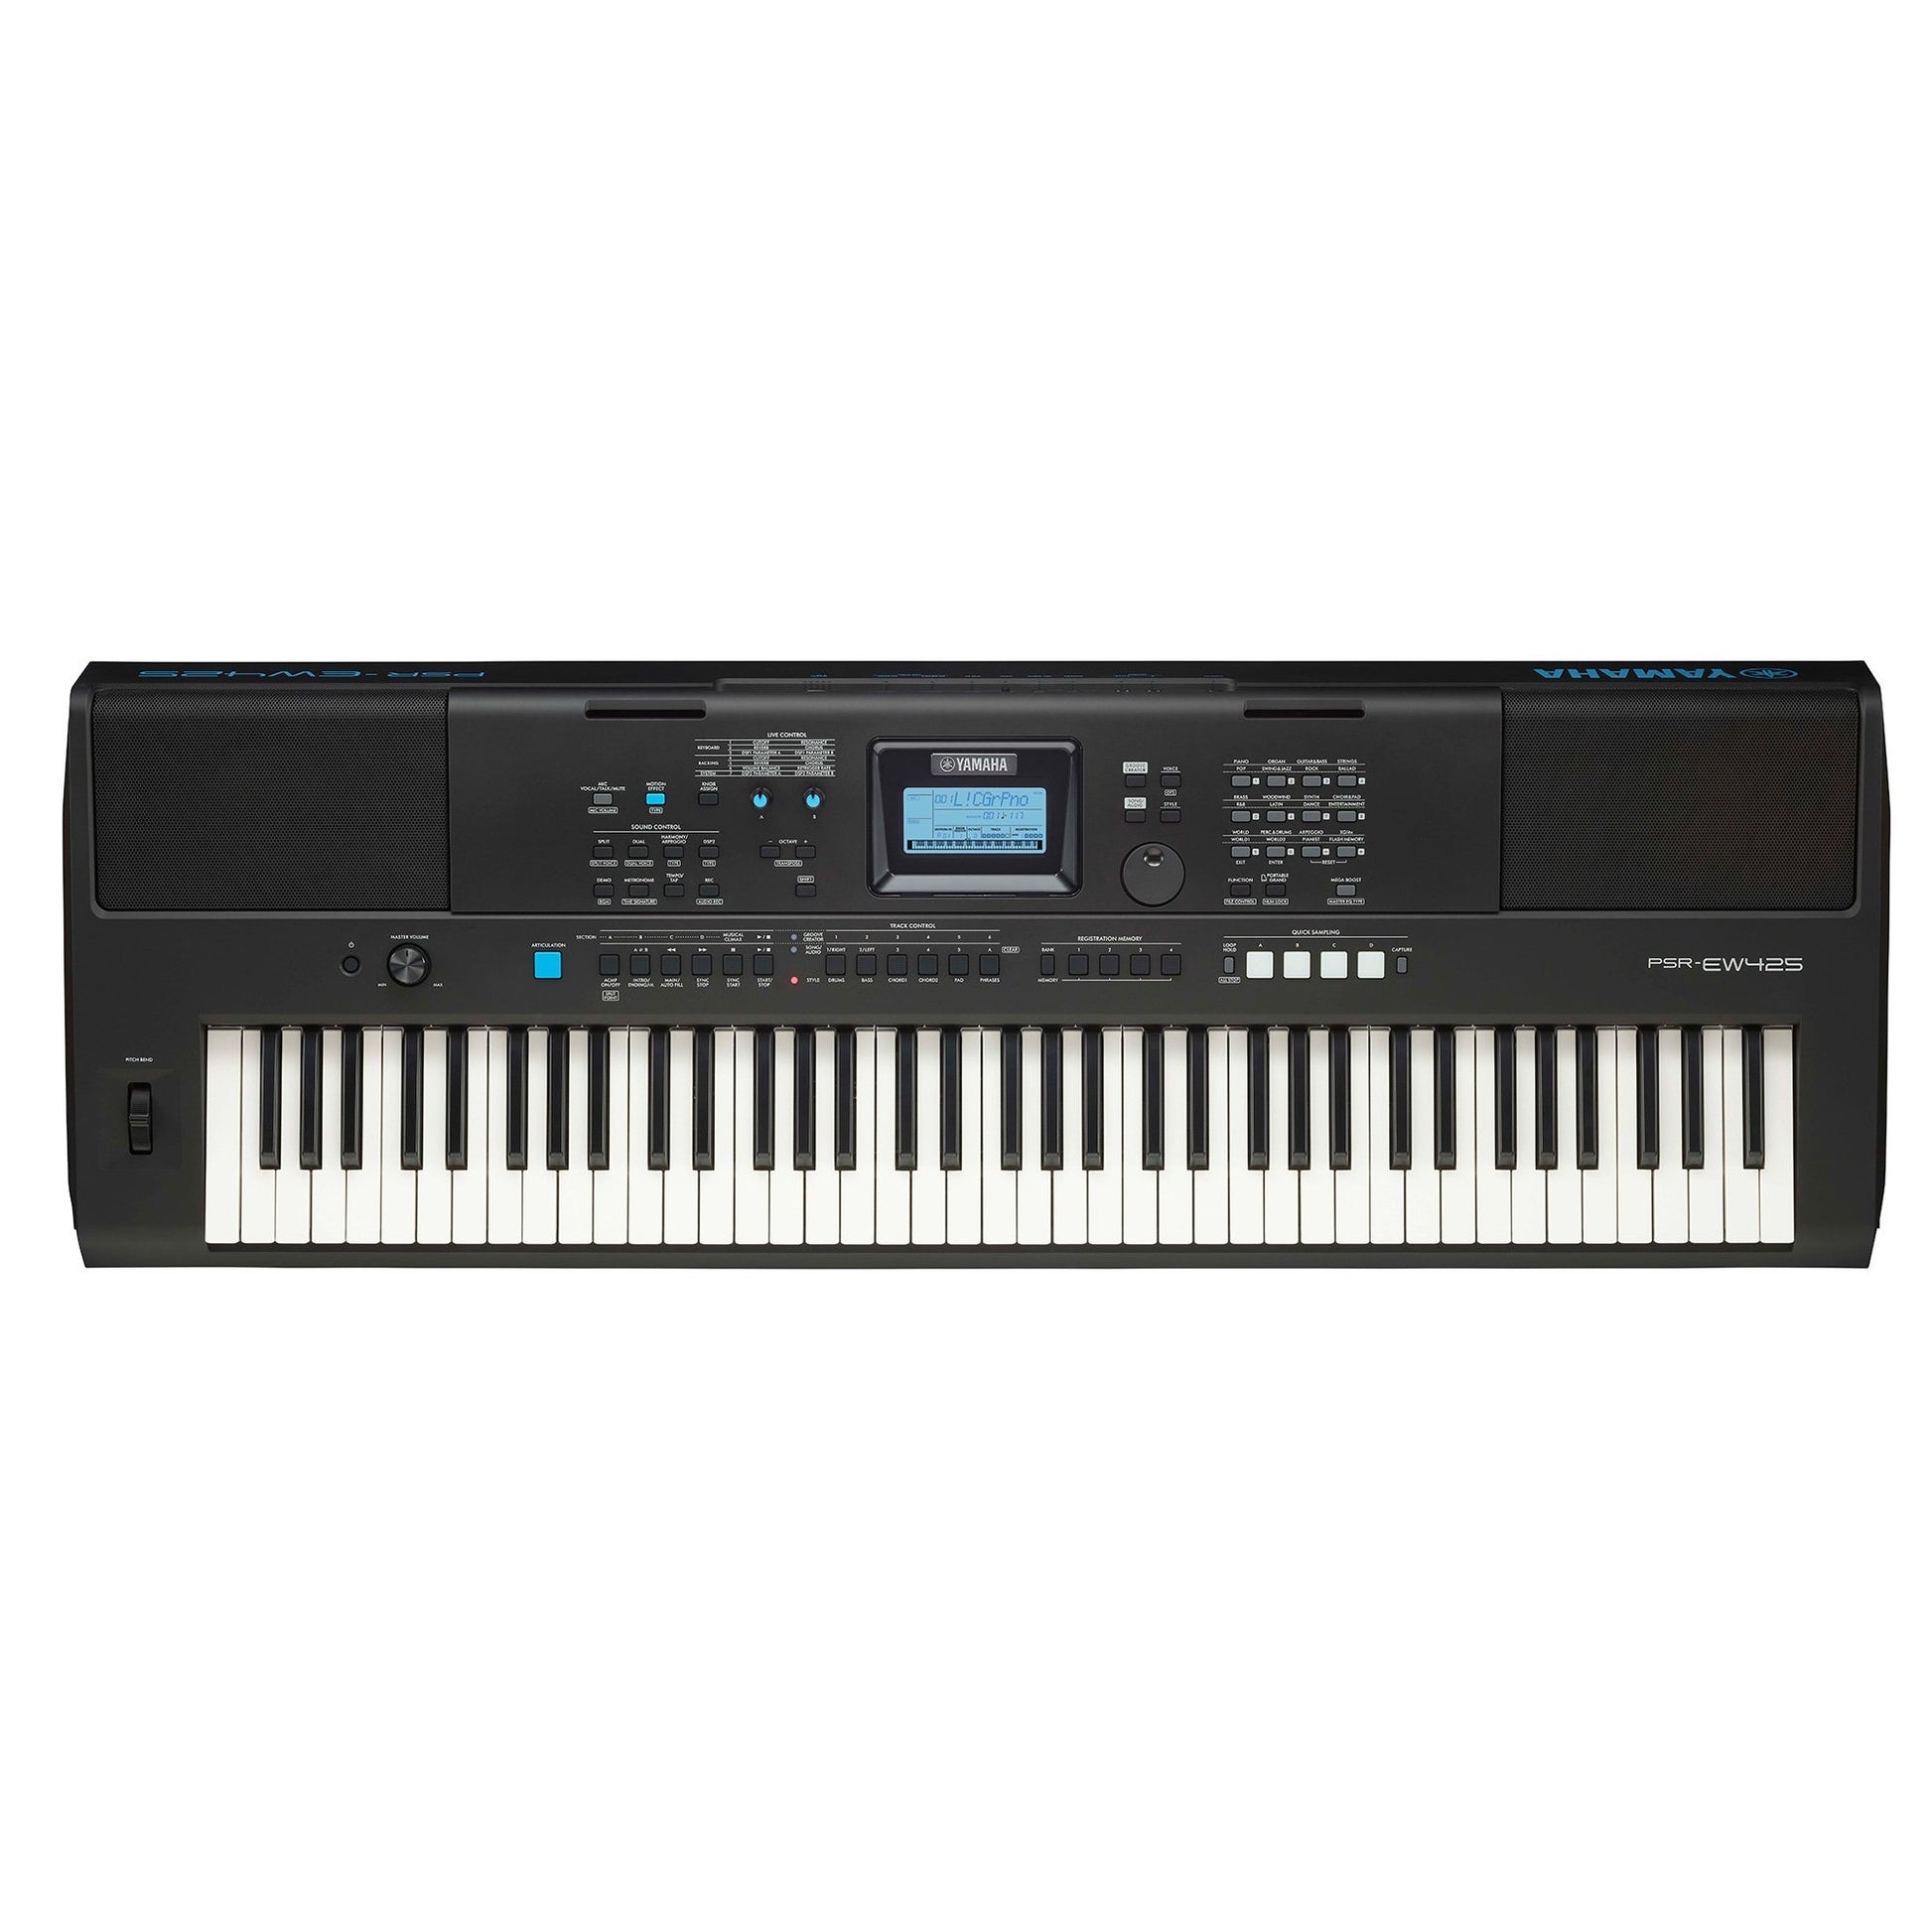 Đàn Organ điện tử/ Portable Keyboard - Yamaha PSR-EW425 (PSR EW425) - Màu đen - Hàng chính hãng:5245